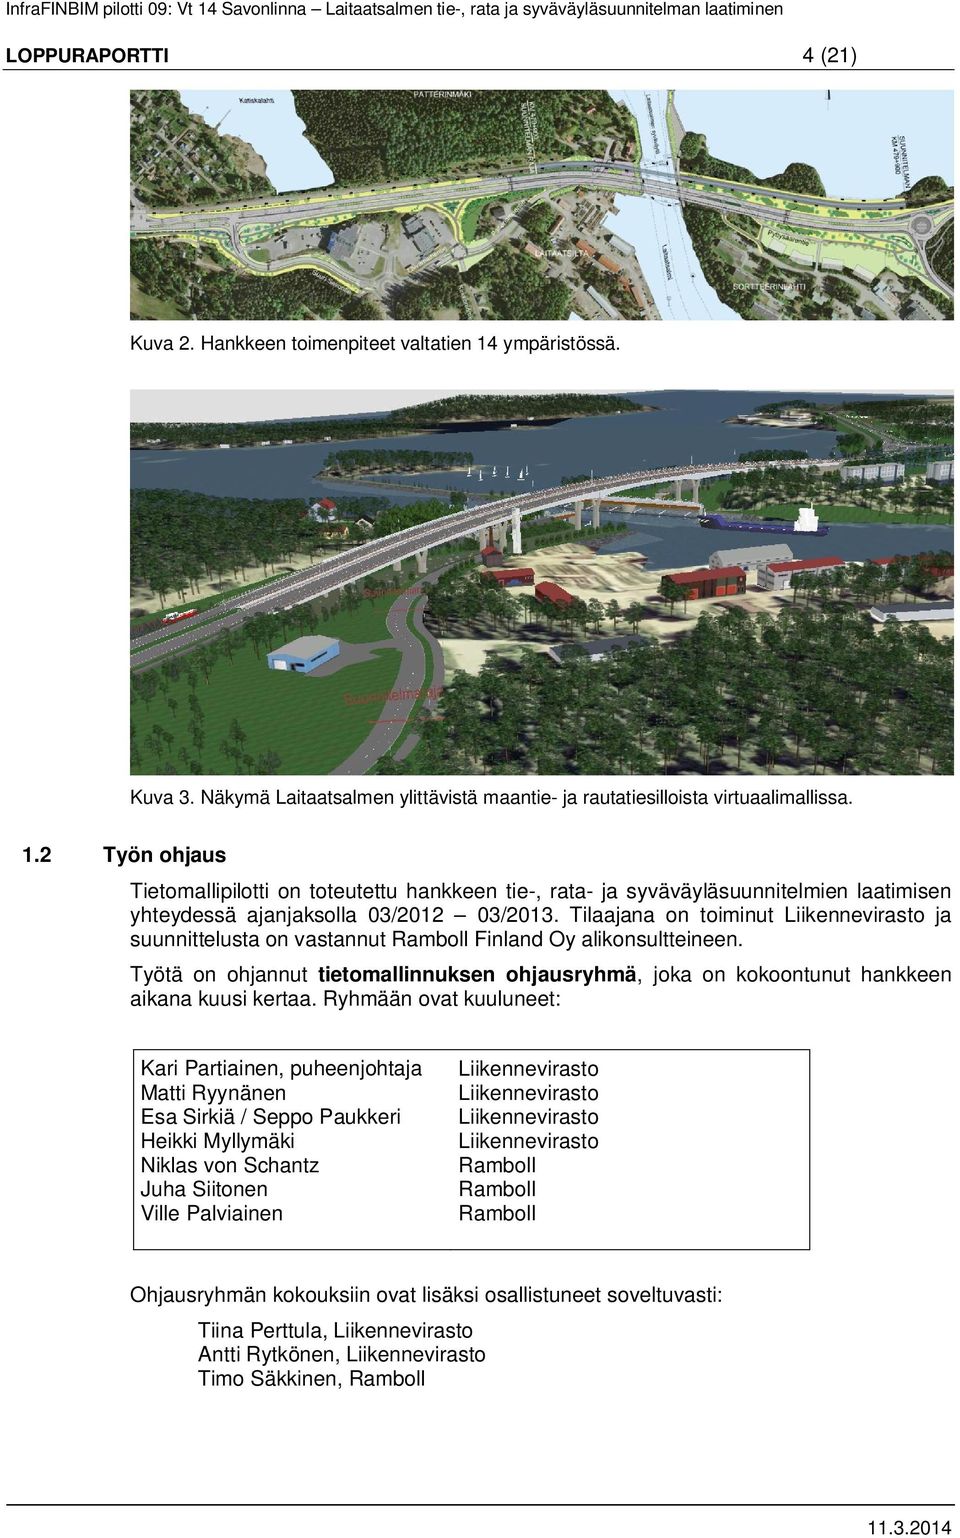 2 Työn ohjaus Tietomallipilotti on toteutettu hankkeen tie-, rata- ja syväväyläsuunnitelmien laatimisen yhteydessä ajanjaksolla 03/2012 03/2013.